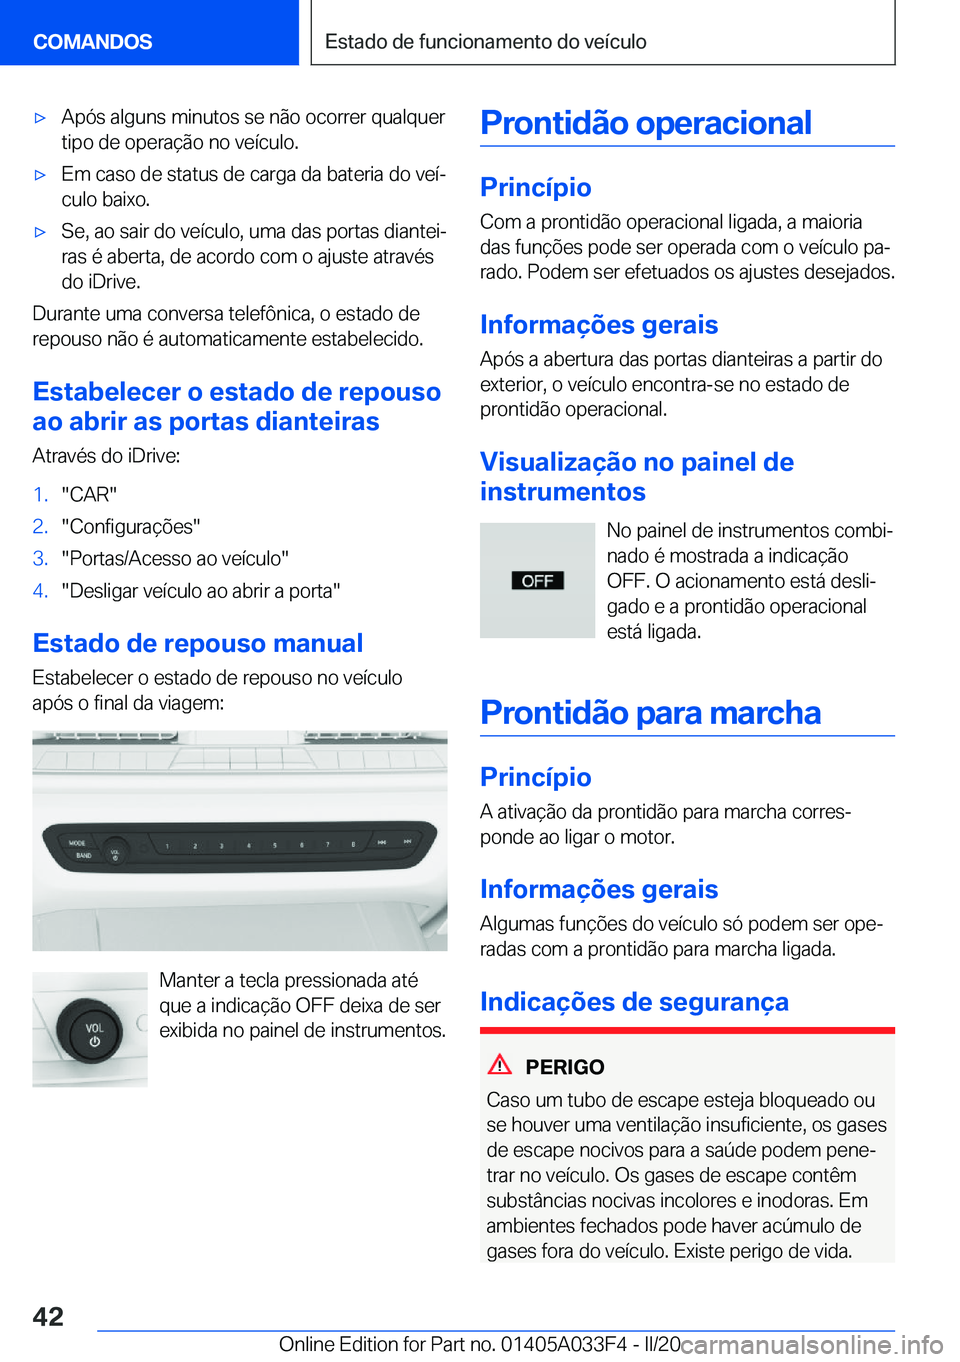 BMW X5 M 2020  Manual do condutor (in Portuguese) 'x�A�p�ó�s��a�l�g�u�n�s��m�i�n�u�t�o�s��s�e��n�ã�o��o�c�o�r�r�e�r��q�u�a�l�q�u�e�r�t�i�p�o��d�e��o�p�e�r�a�